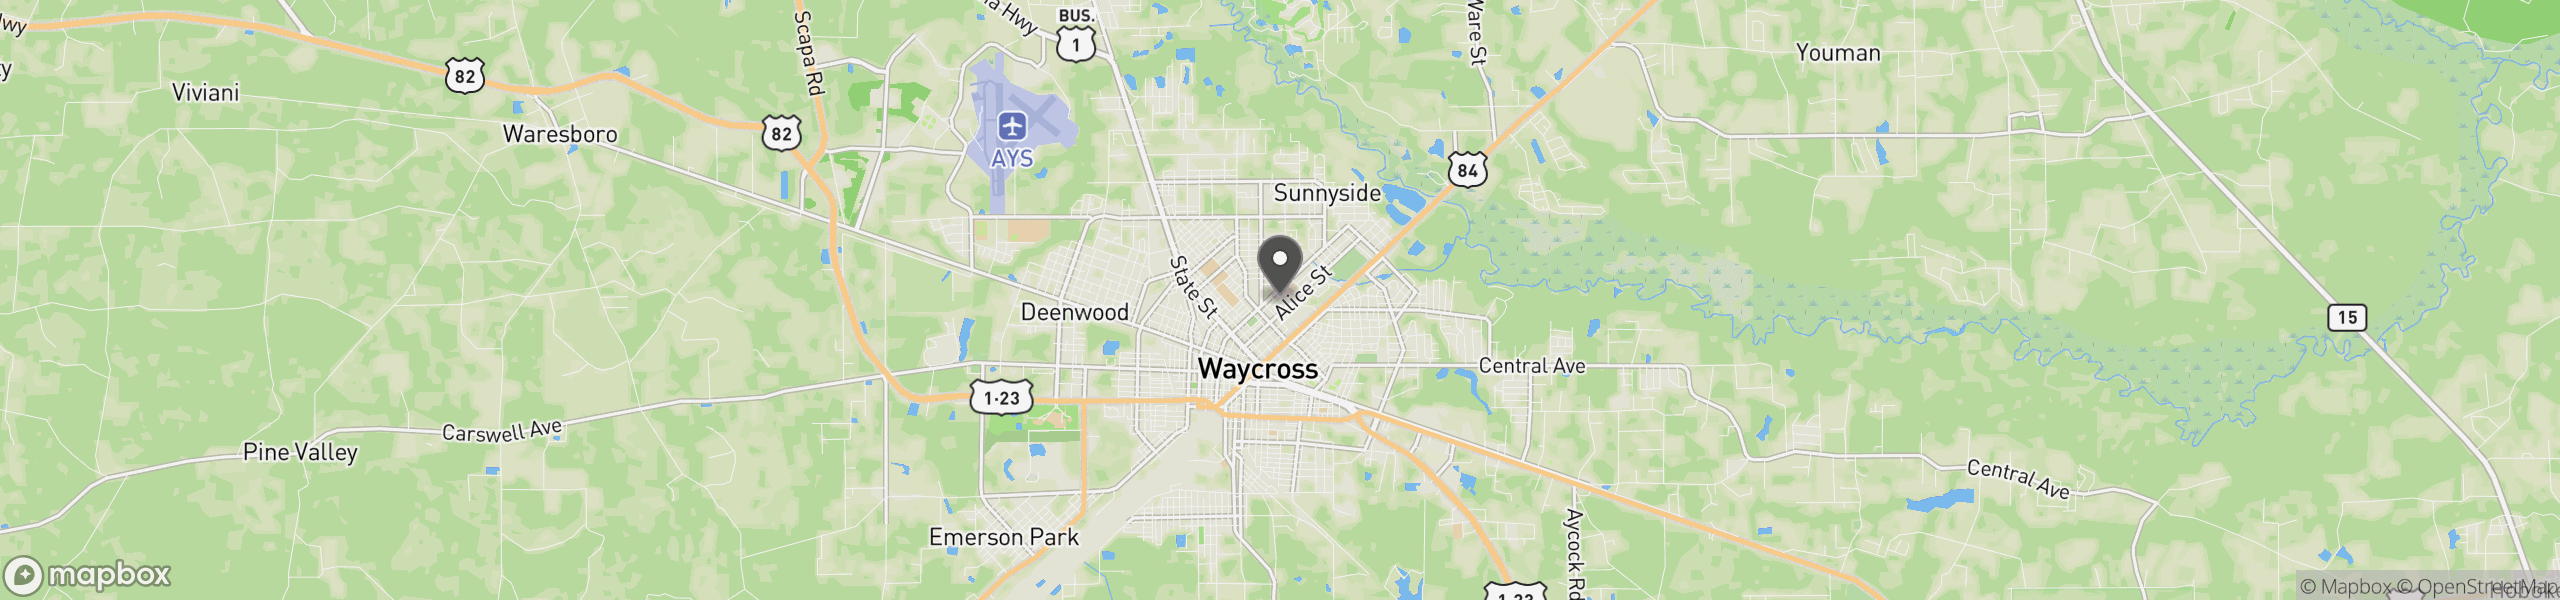 Waycross, GA 31501